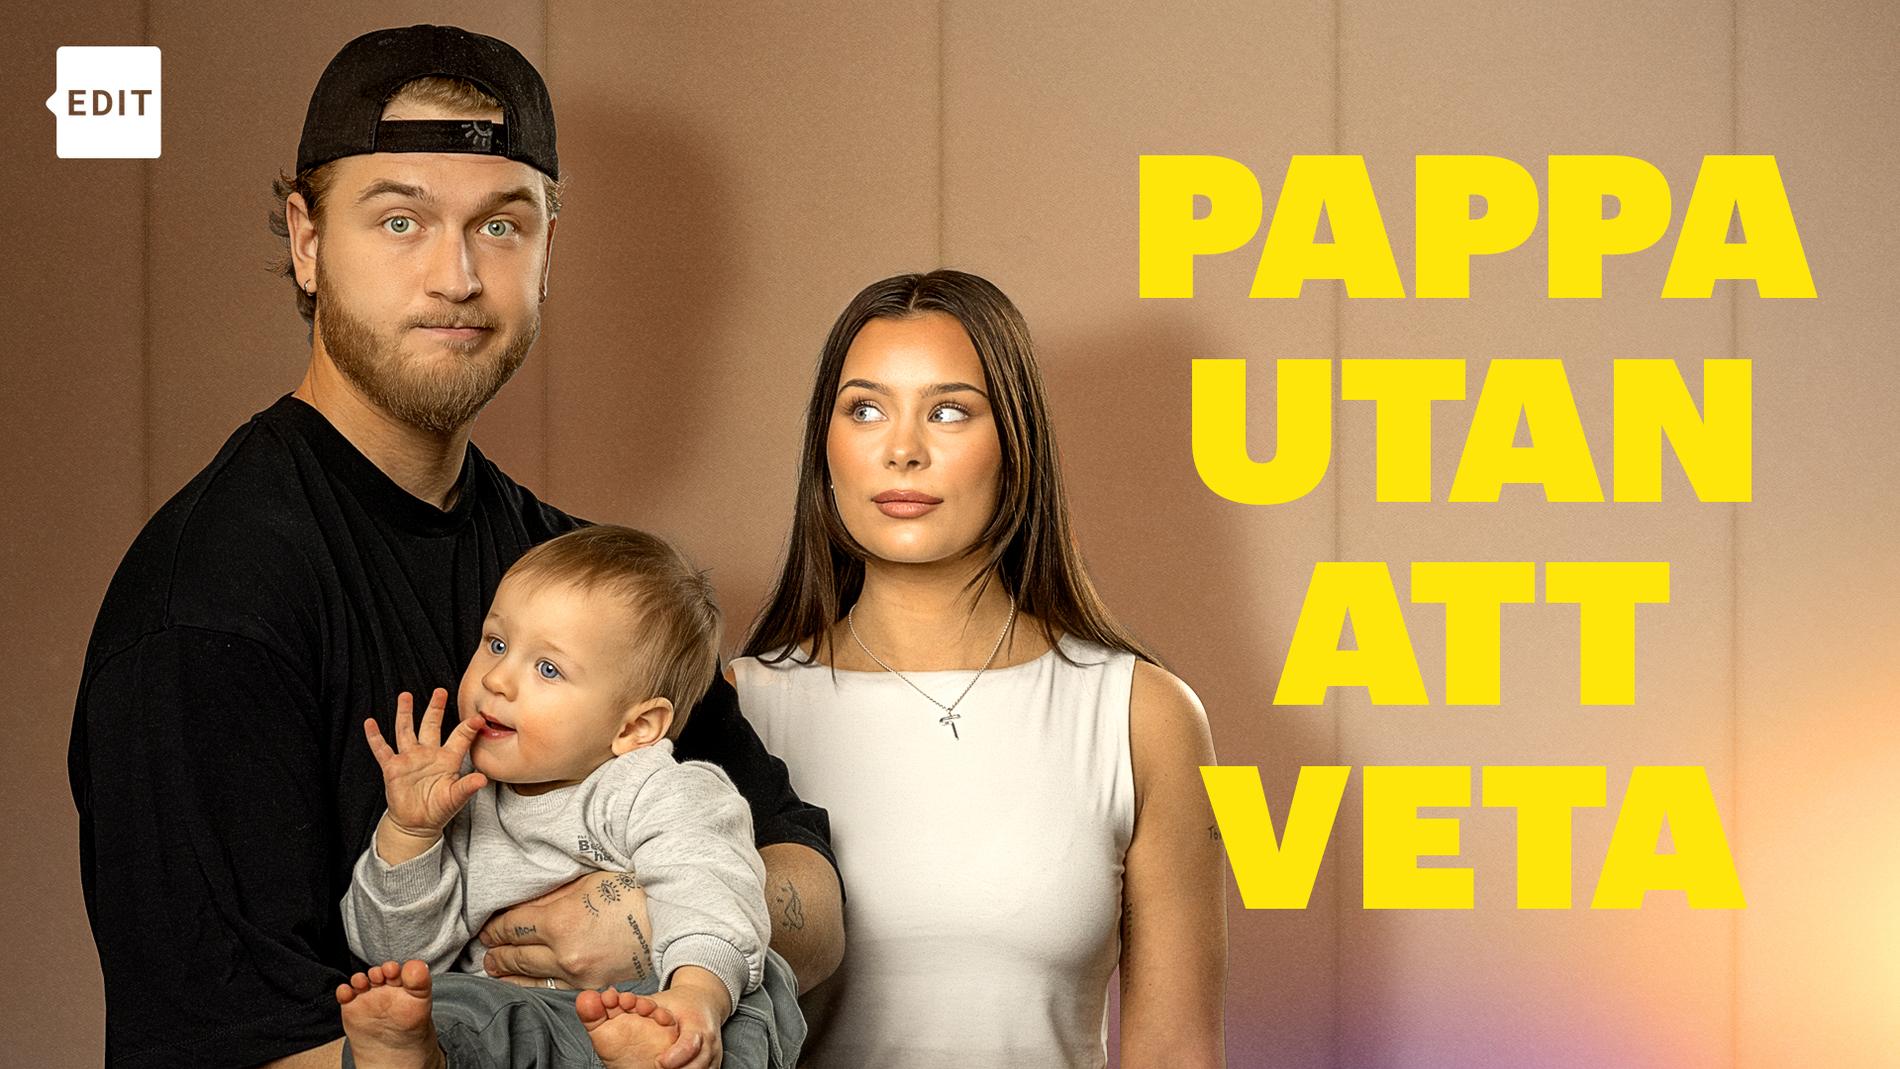 SVT Edits Pappa utan att veta – uppföljaren till ”Gravid utan att veta”.